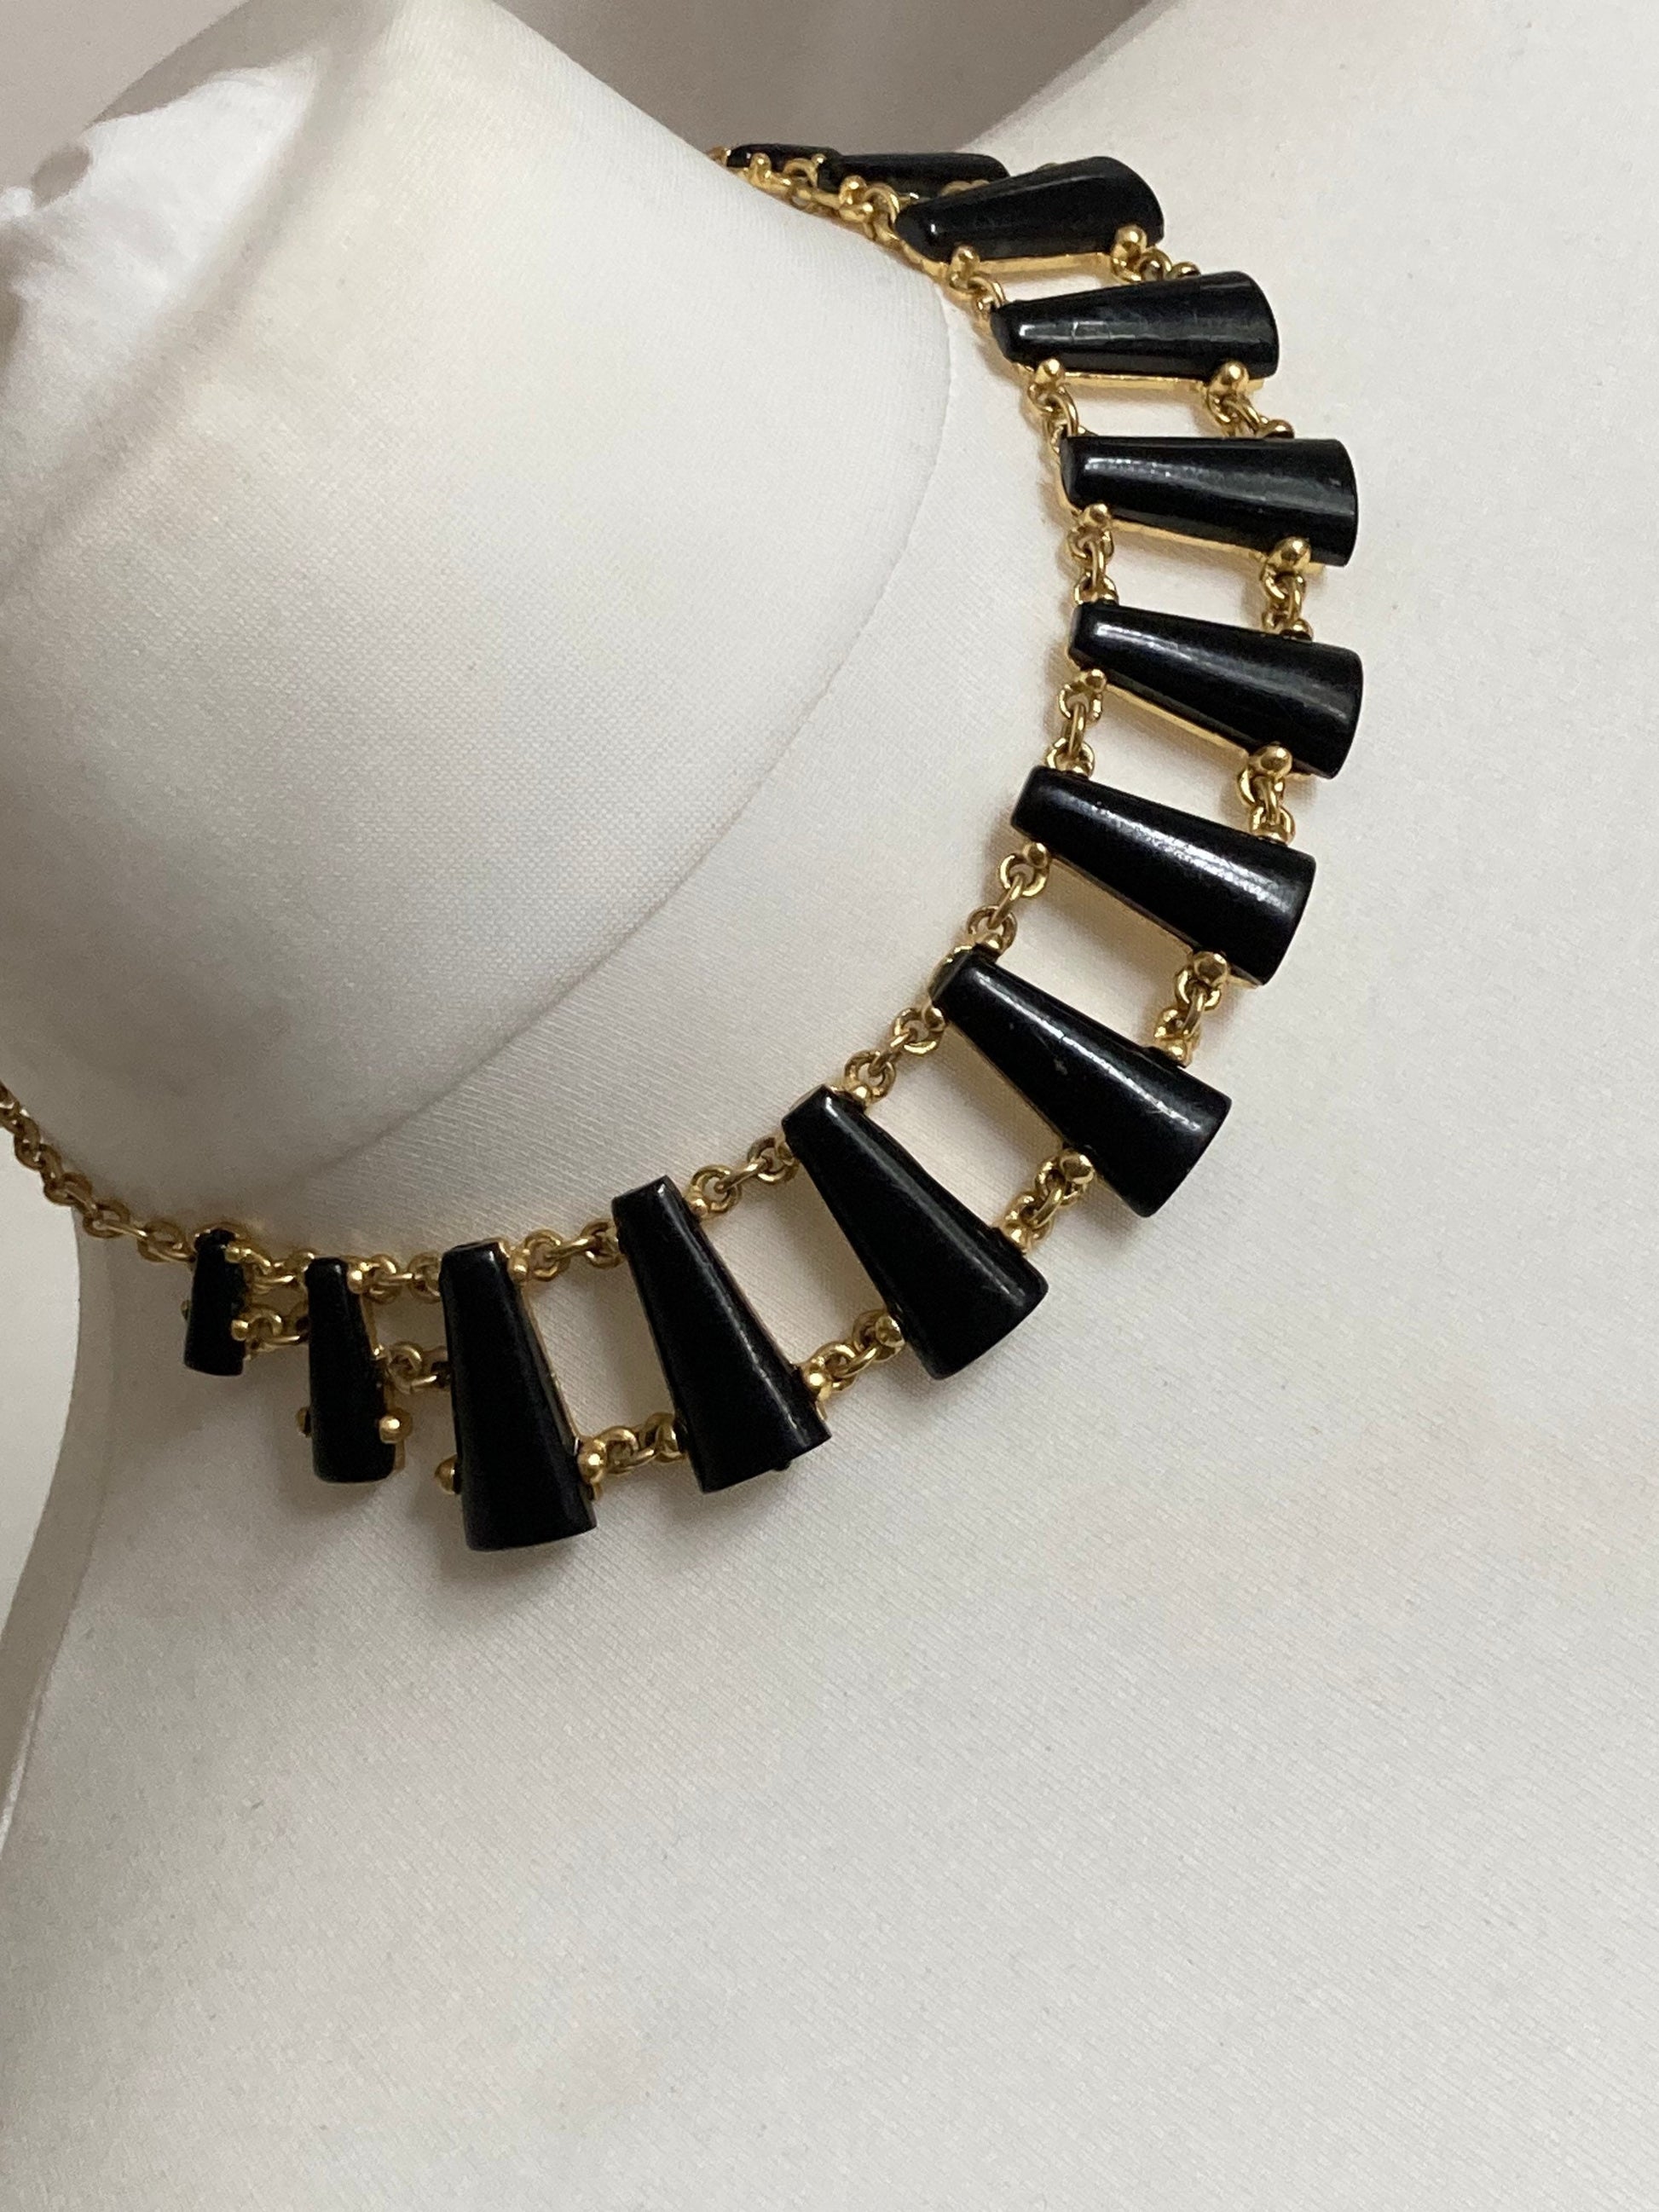 Signed Dolce Vita gold tone statement panel link black cabochon necklace Paris France Designer